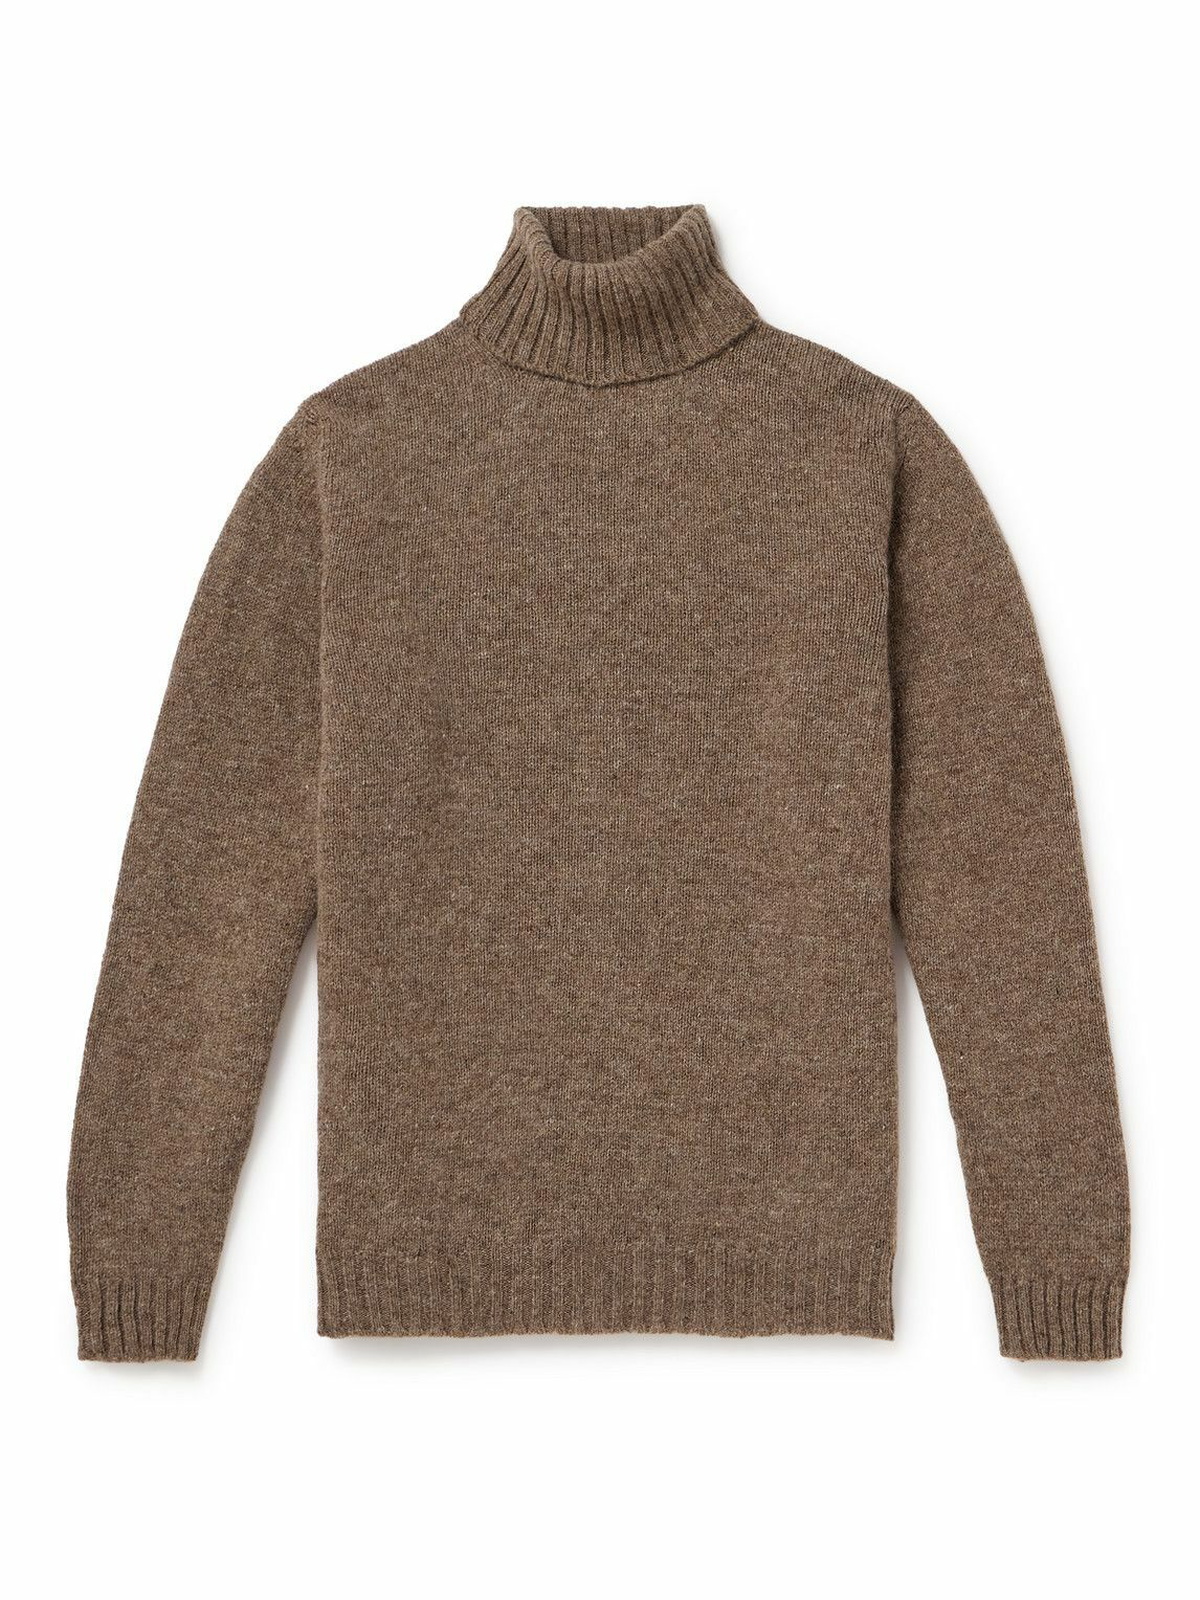 Kingsman - Shetland Wool Rollneck Sweater - Neutrals Kingsman